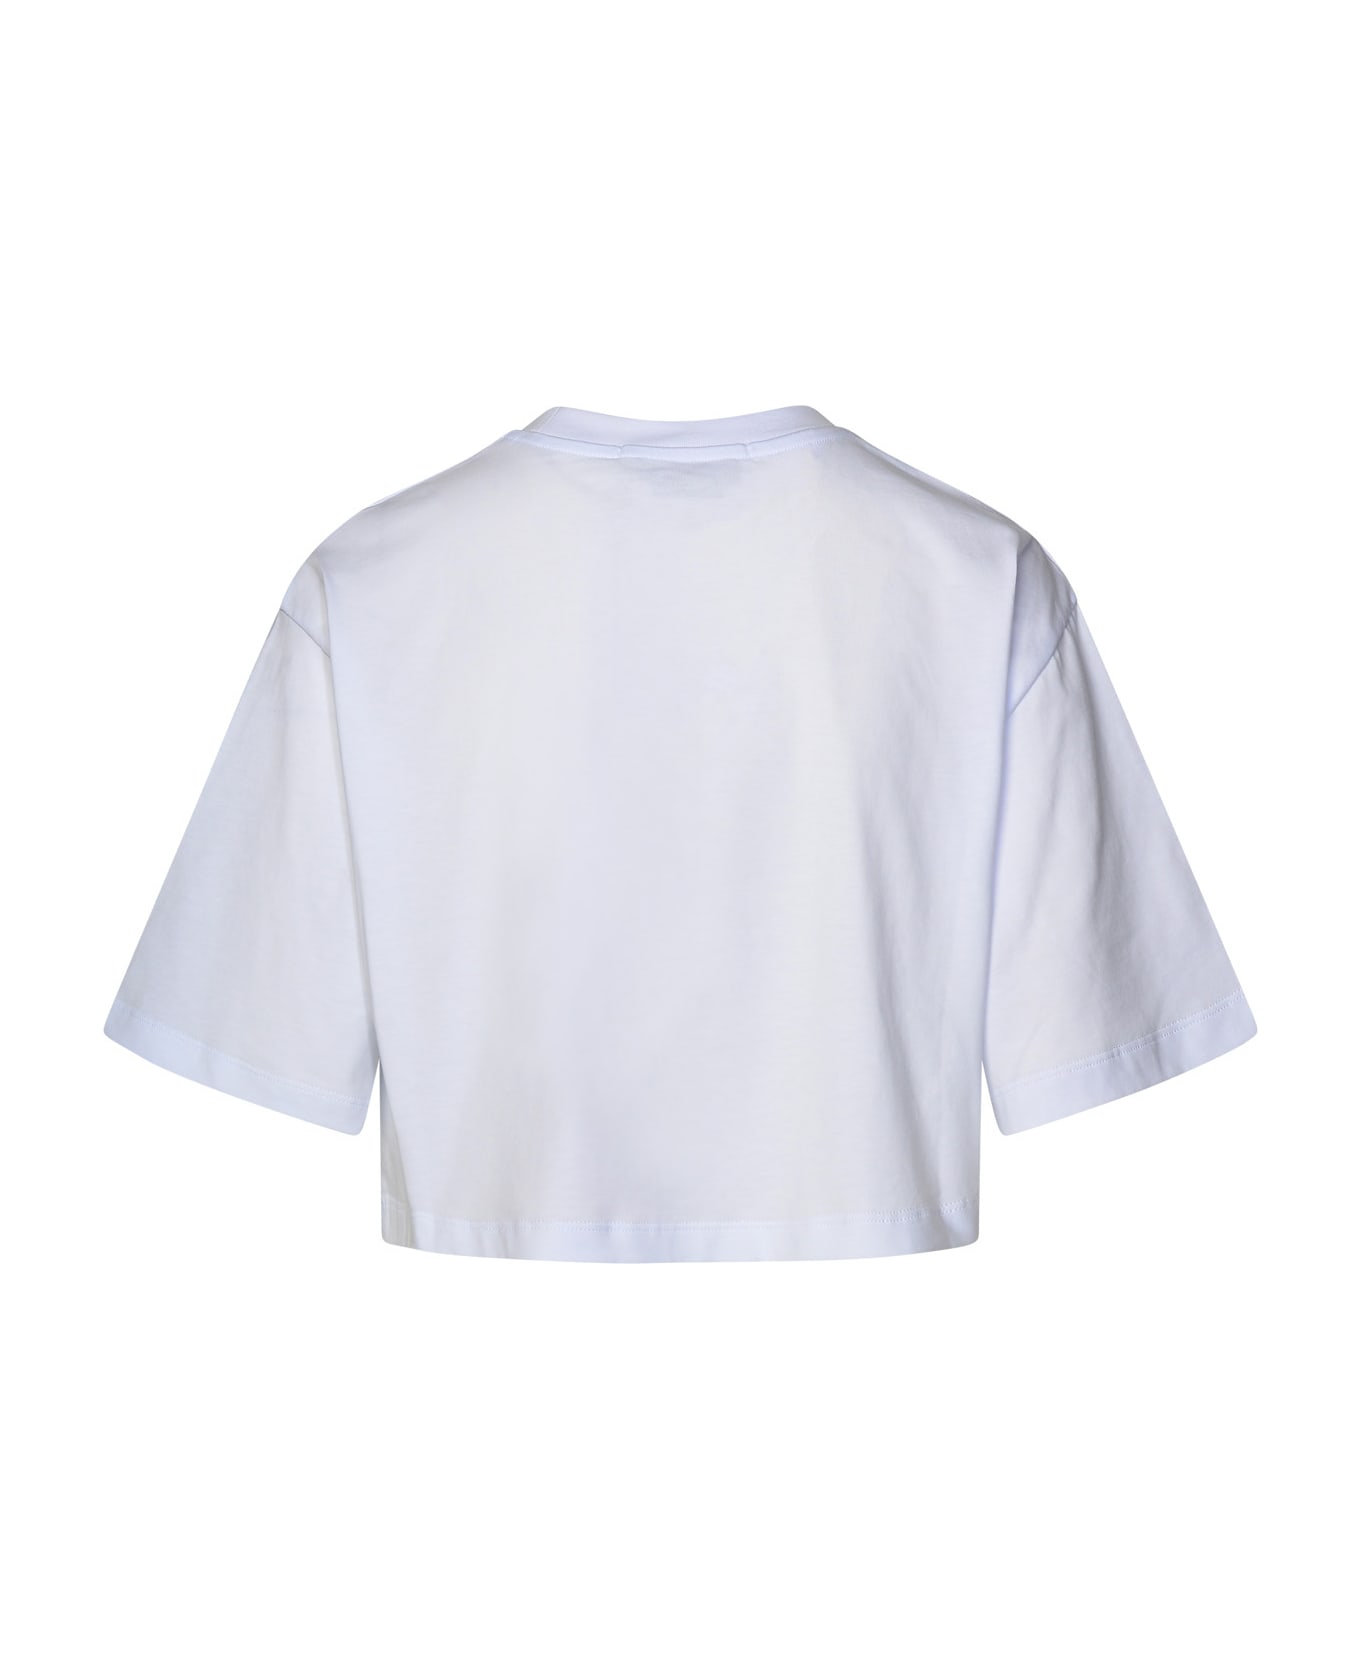 MSGM White Cotton T-shirt - Bianco Tシャツ